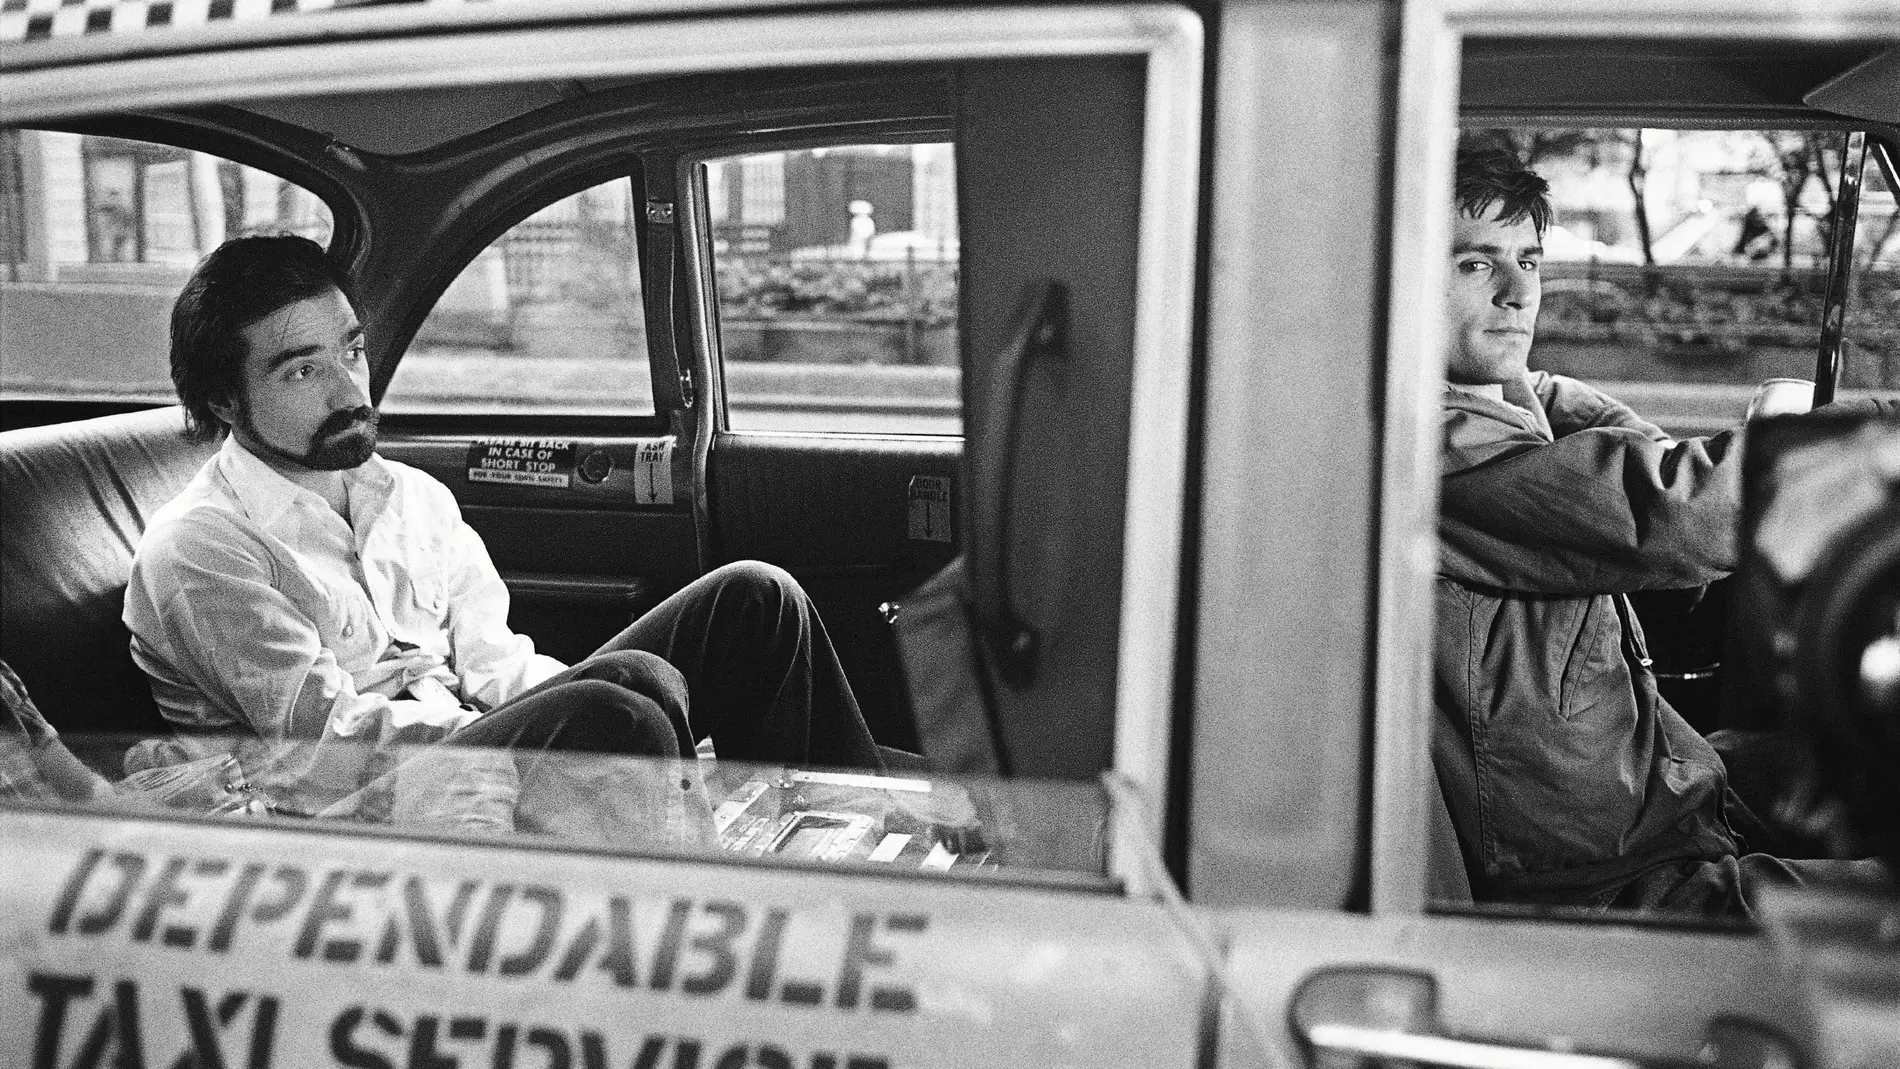 Imagen del rodaje de "Taxi Driver" tomada por Steve Shapiro, con Martin Scorsese sentado al taxi junto a Robert de Niro. EFE/Krause & Johansen